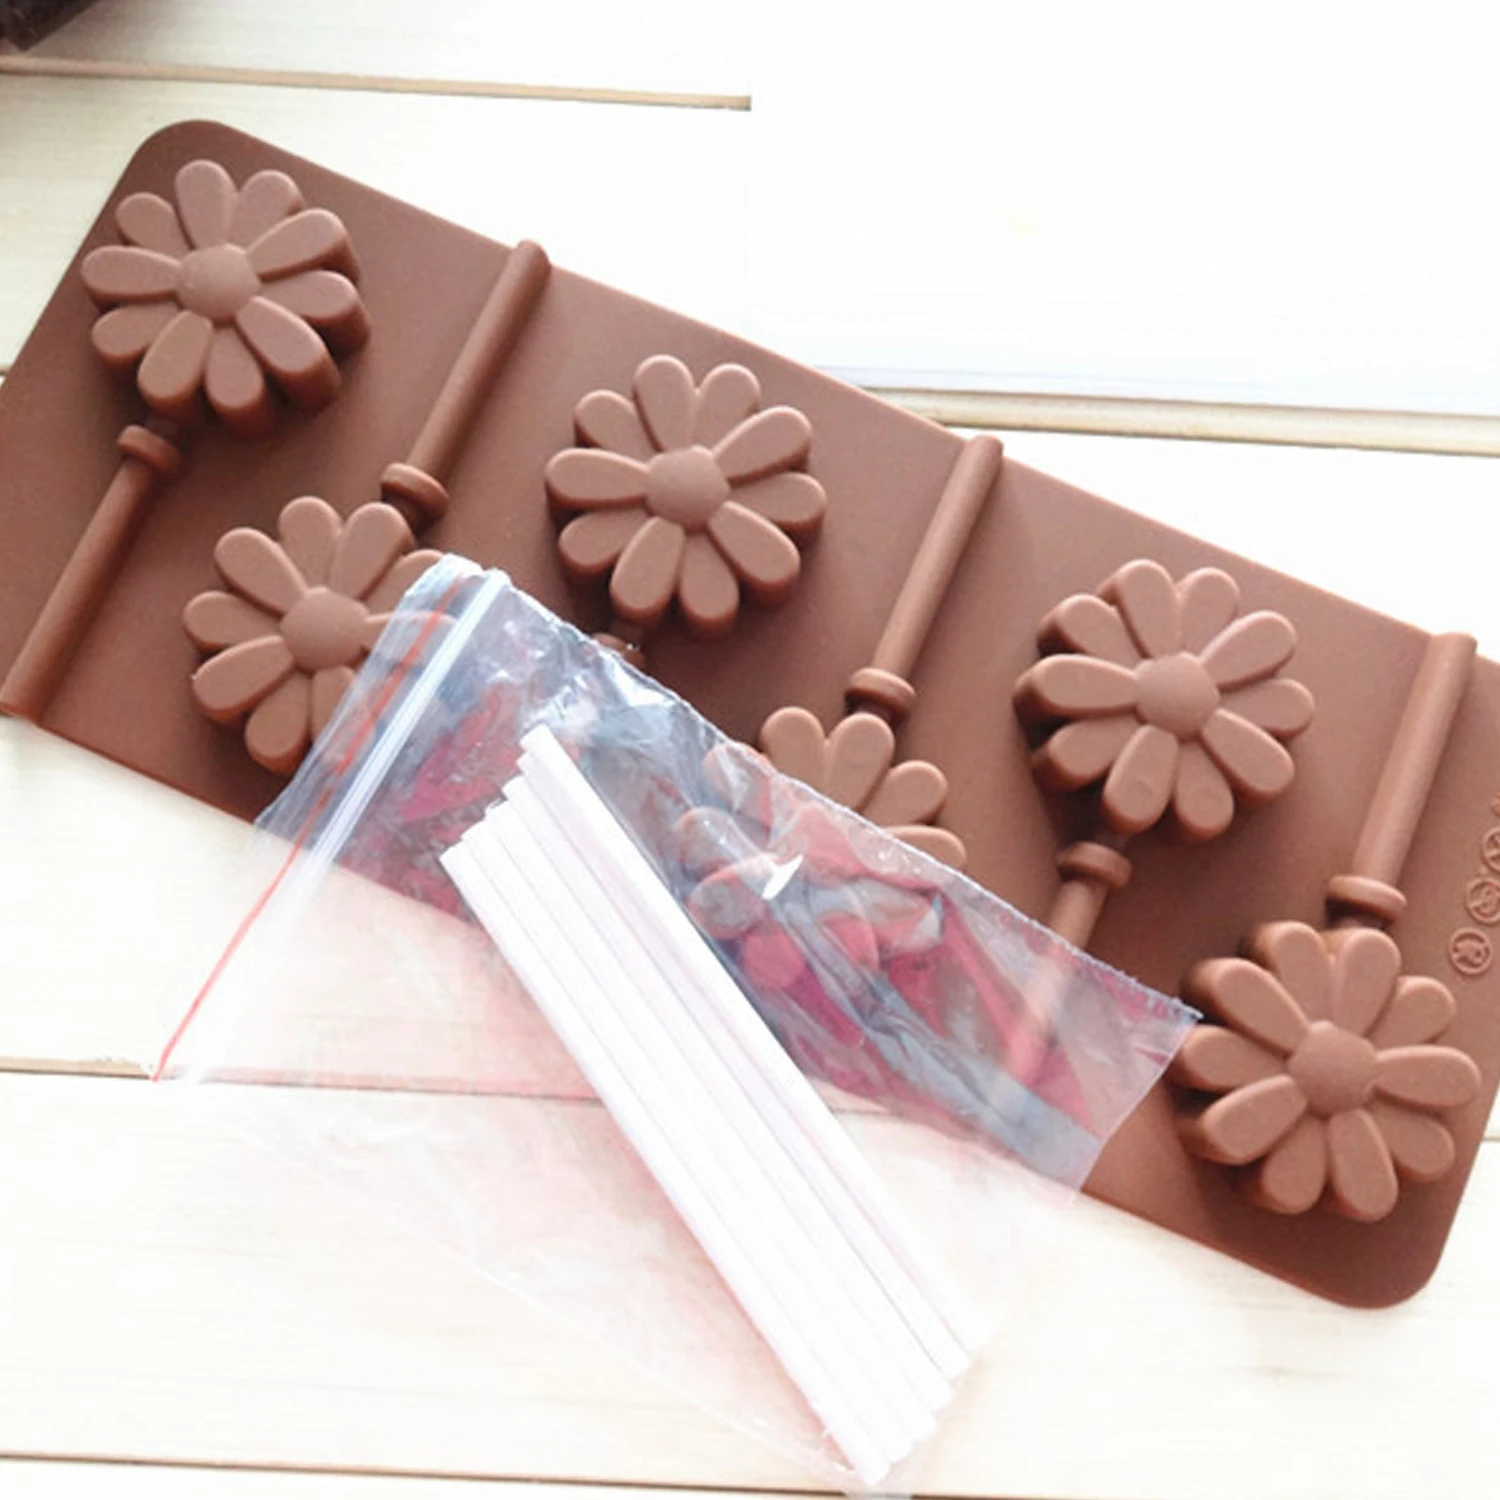 Behogar 6 отверстий силиконовая форма для леденцов форма для пирожного печенье конфеты принадлежность для изготовления шоколадных форм формы для выпечки лоток инструменты для кухни дома